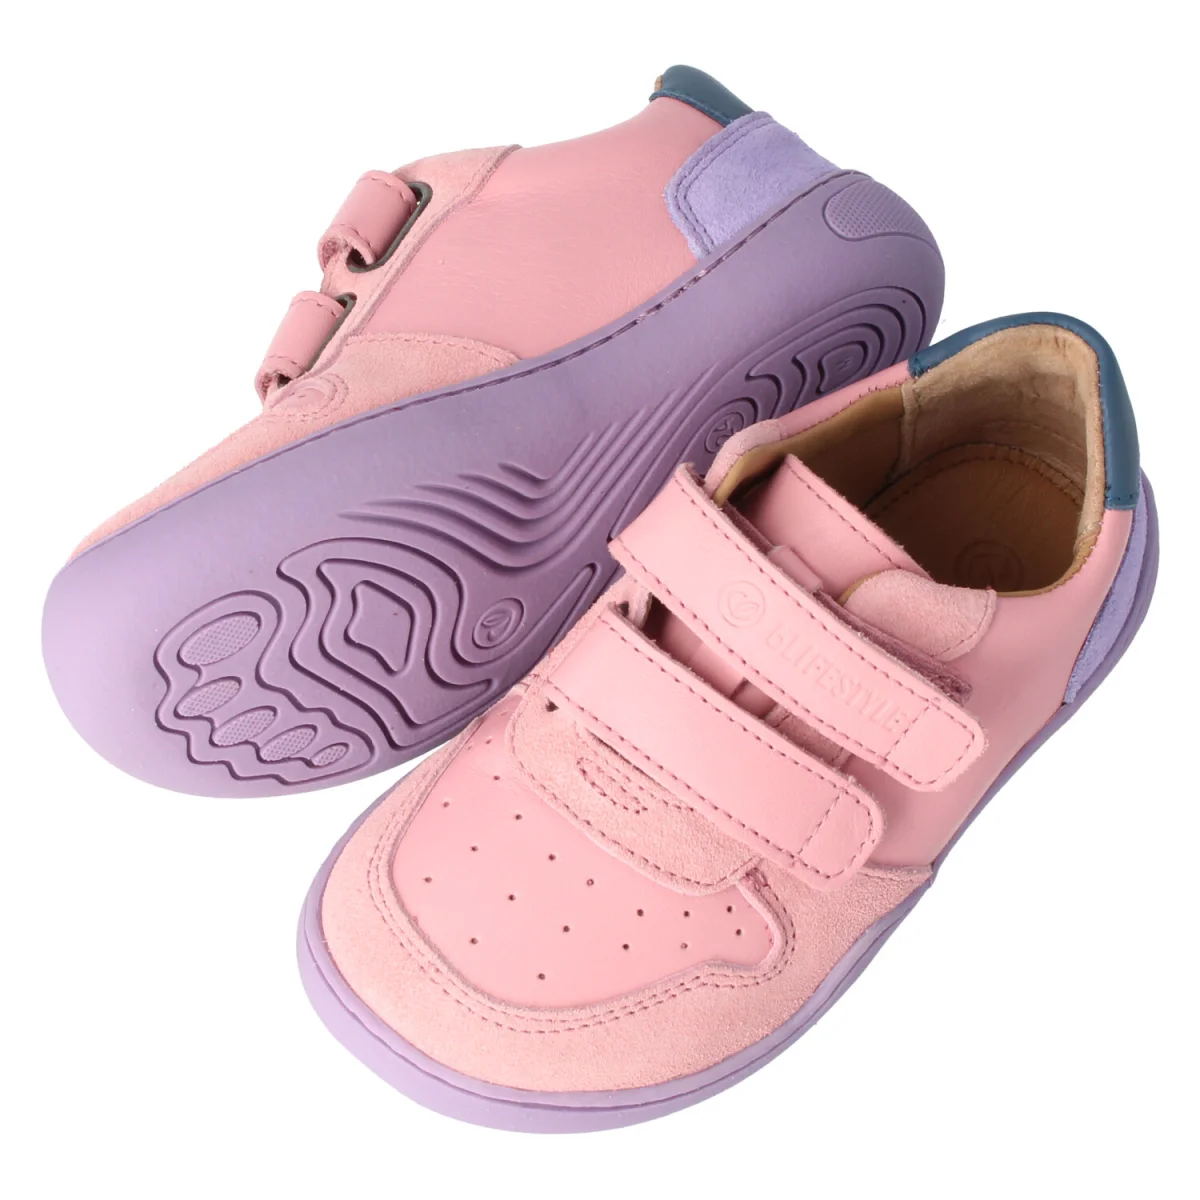 bLIFESTYLE Anura nahast tennised- Pink Laste barefoot jalatsid - HellyK - Kvaliteetsed lasteriided, villariided, barefoot jalatsid